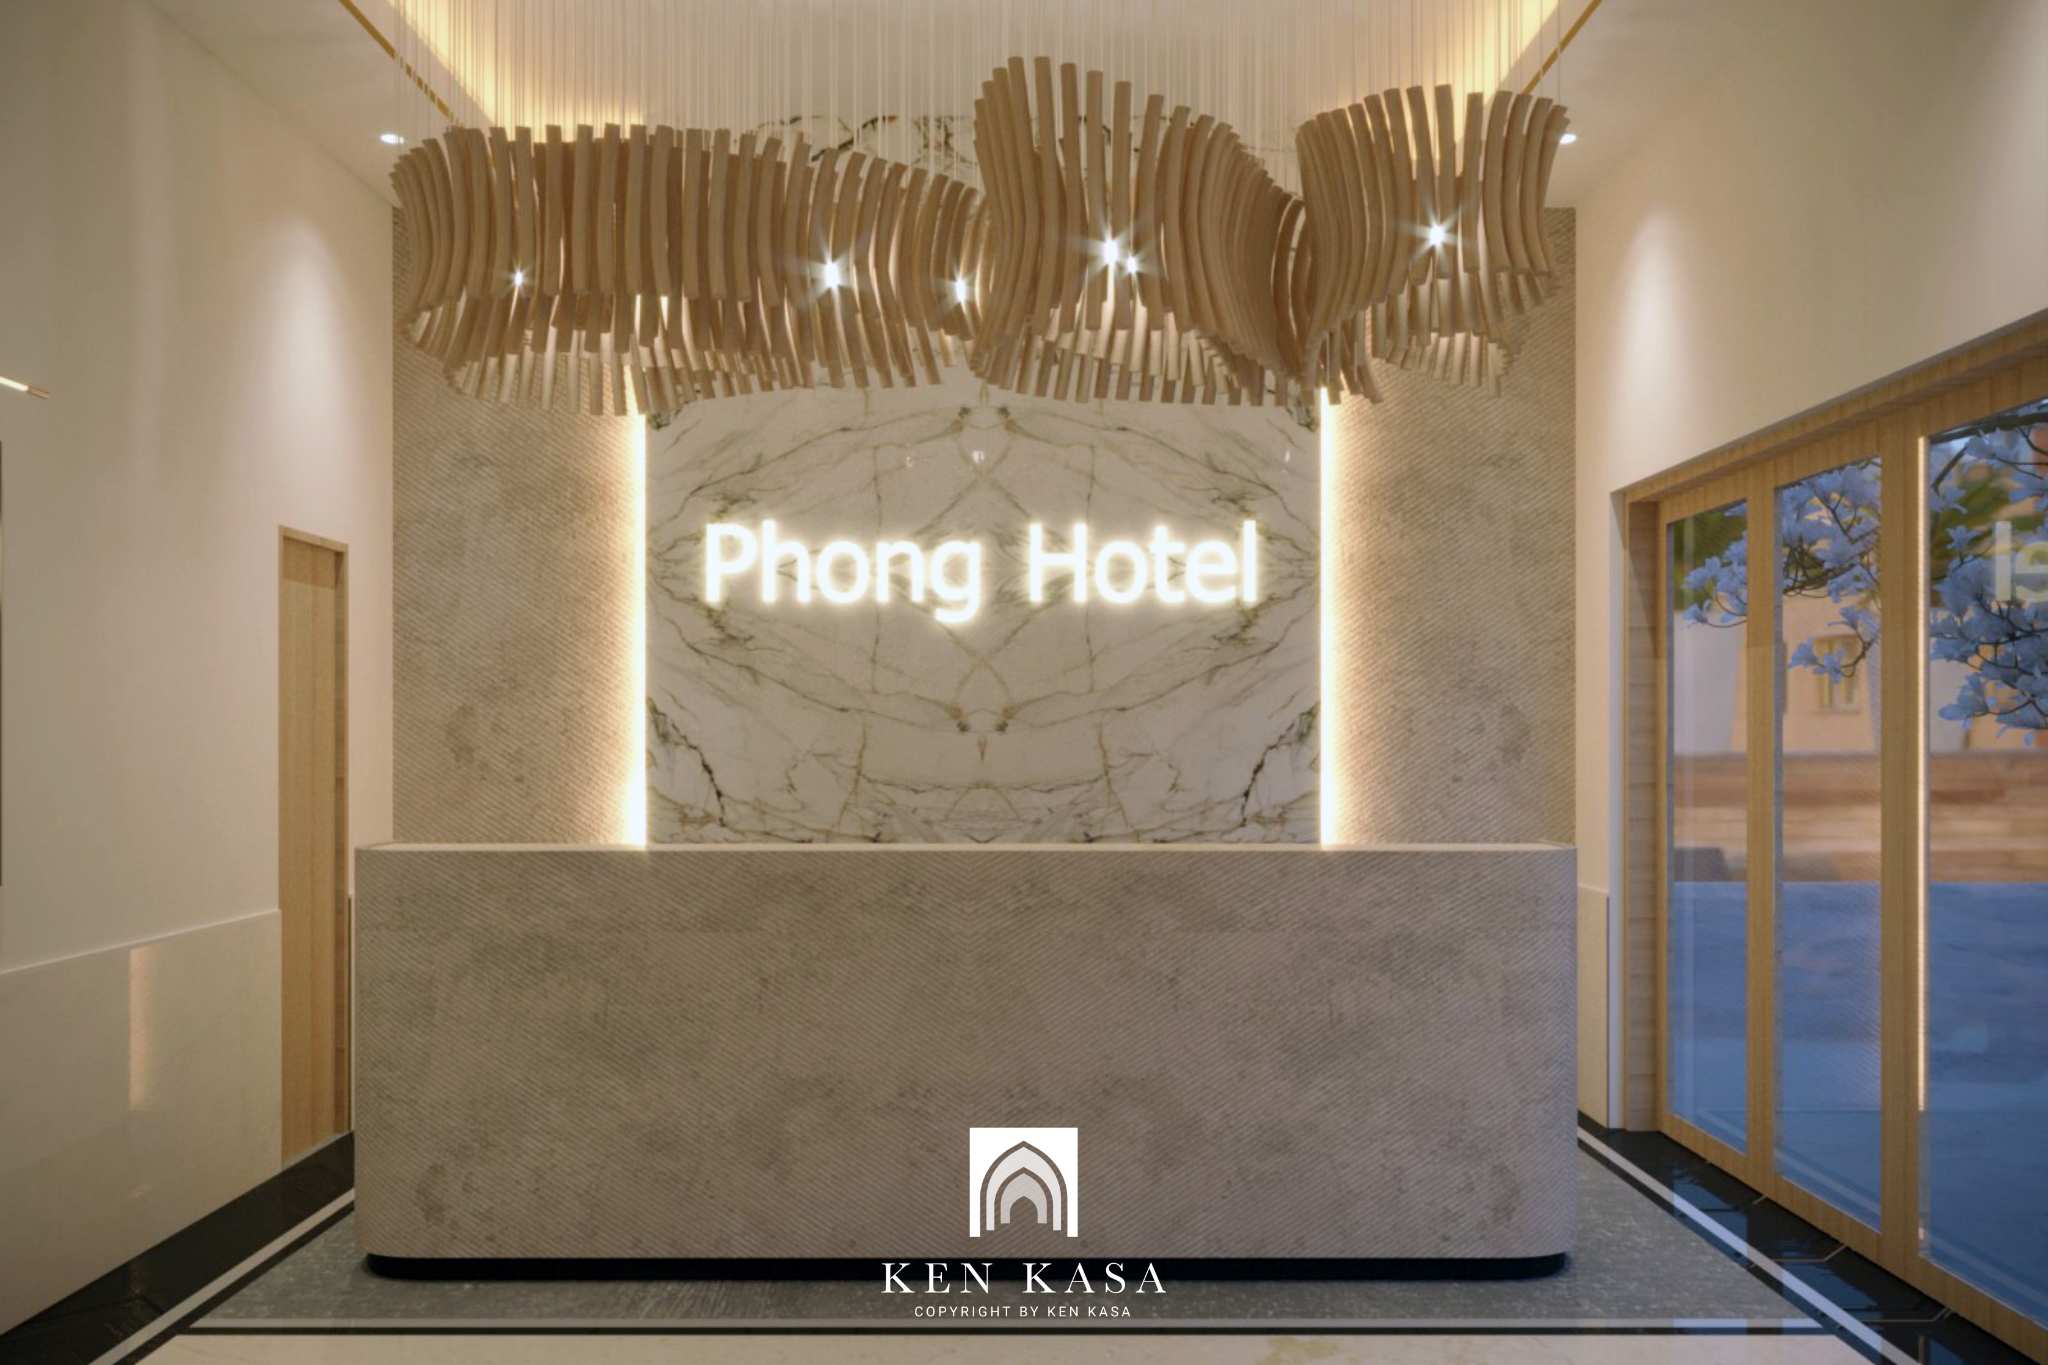 Thiết kế Phong Hotel tại Phú Quốc - không gian nghỉ dưỡng trẻ trung và hiện đại